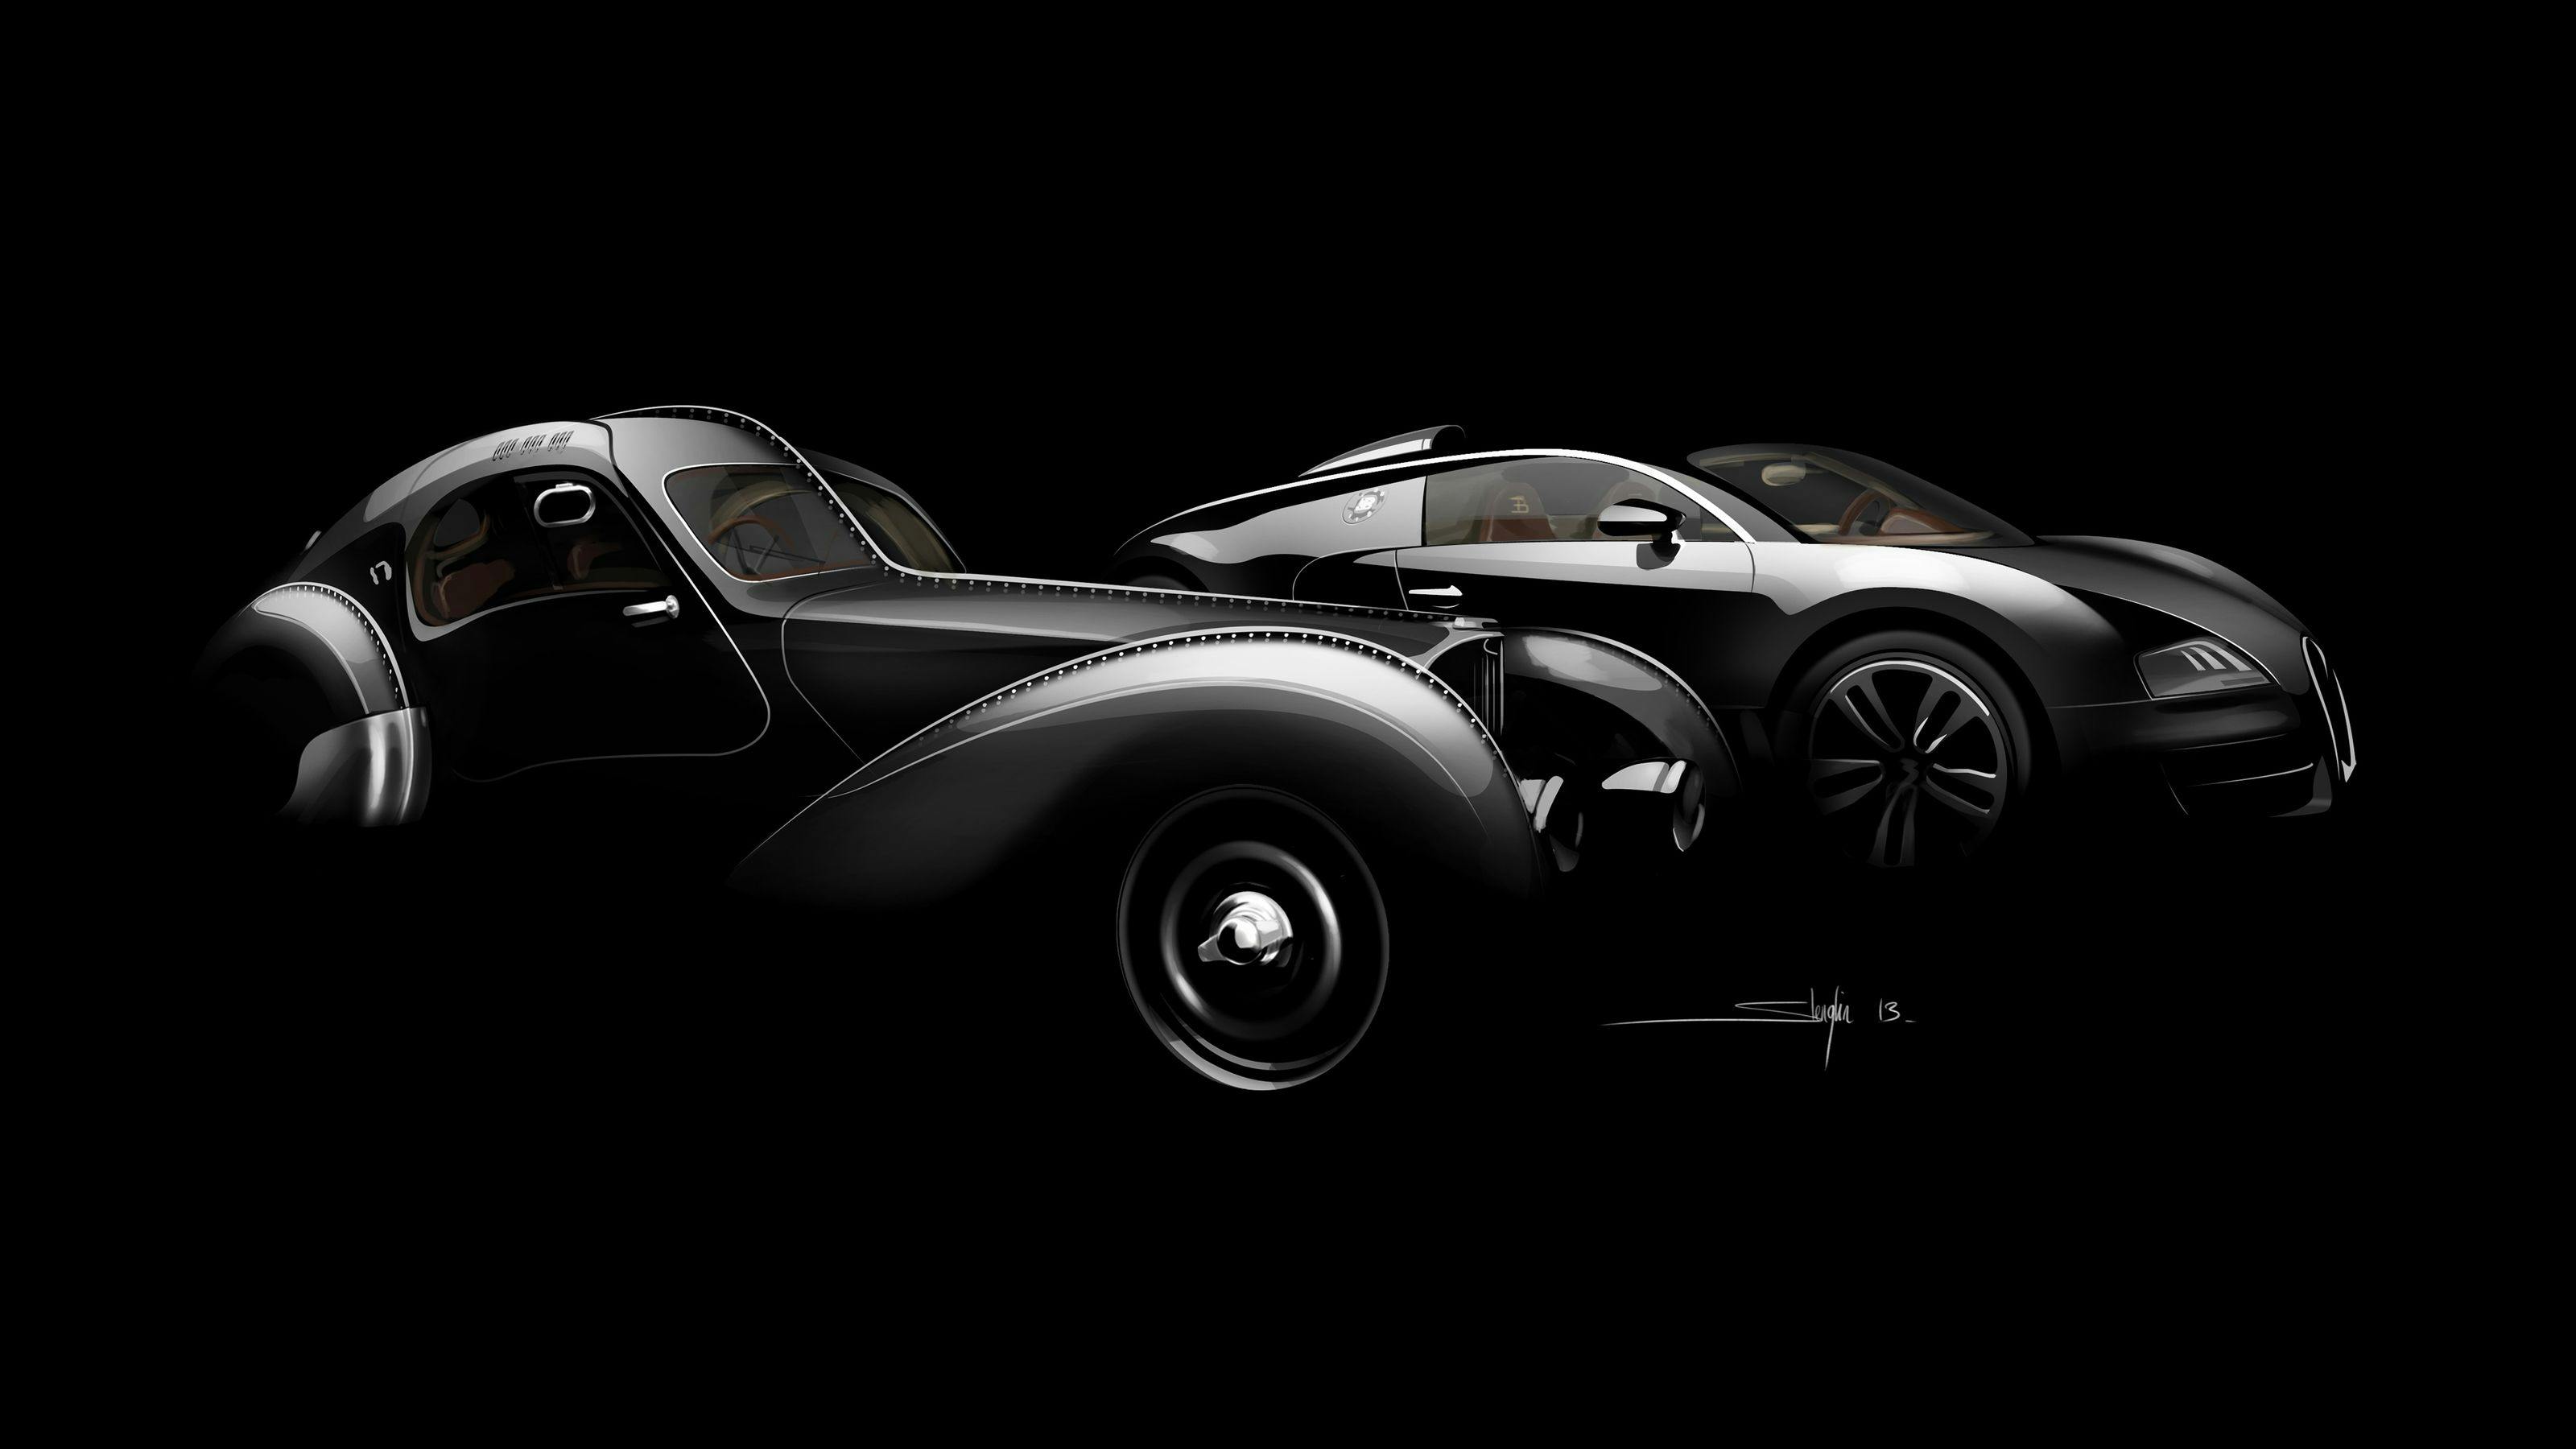 IAA 2013: The Bugatti Legend "Jean Bugatti" receives its world premiere